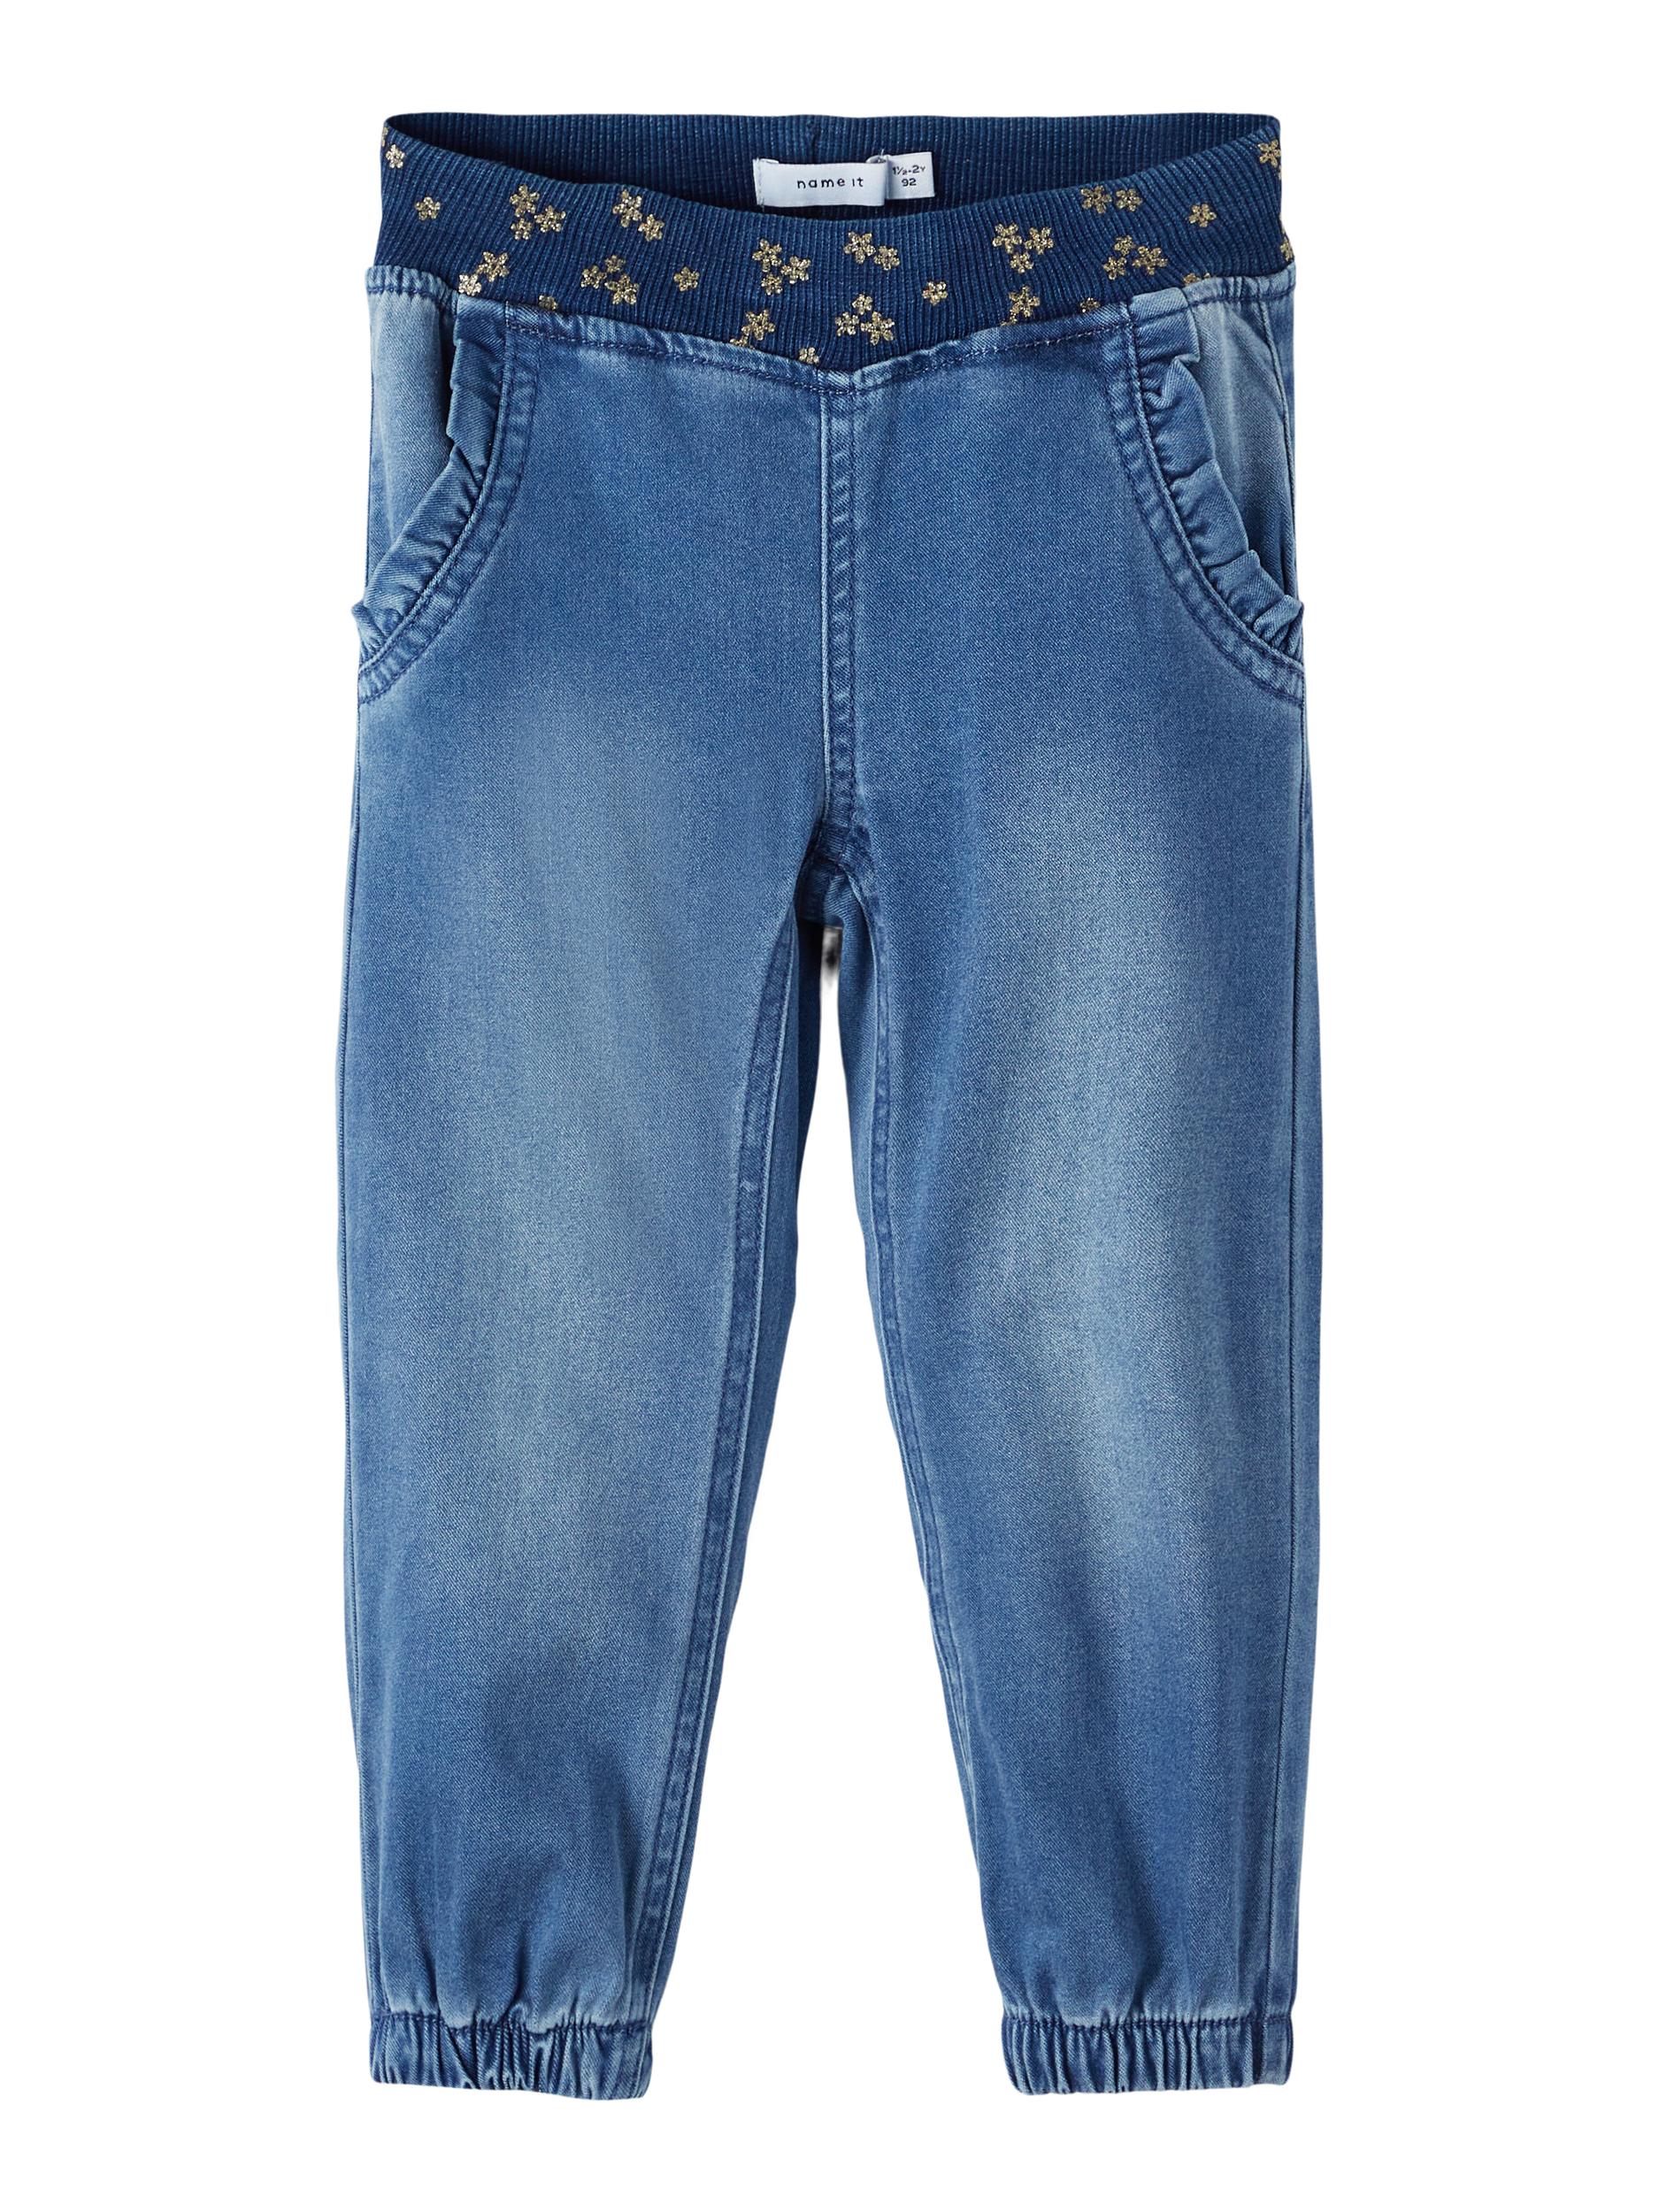  Bibi Bukser, Medium Blue Denim, 104 cm